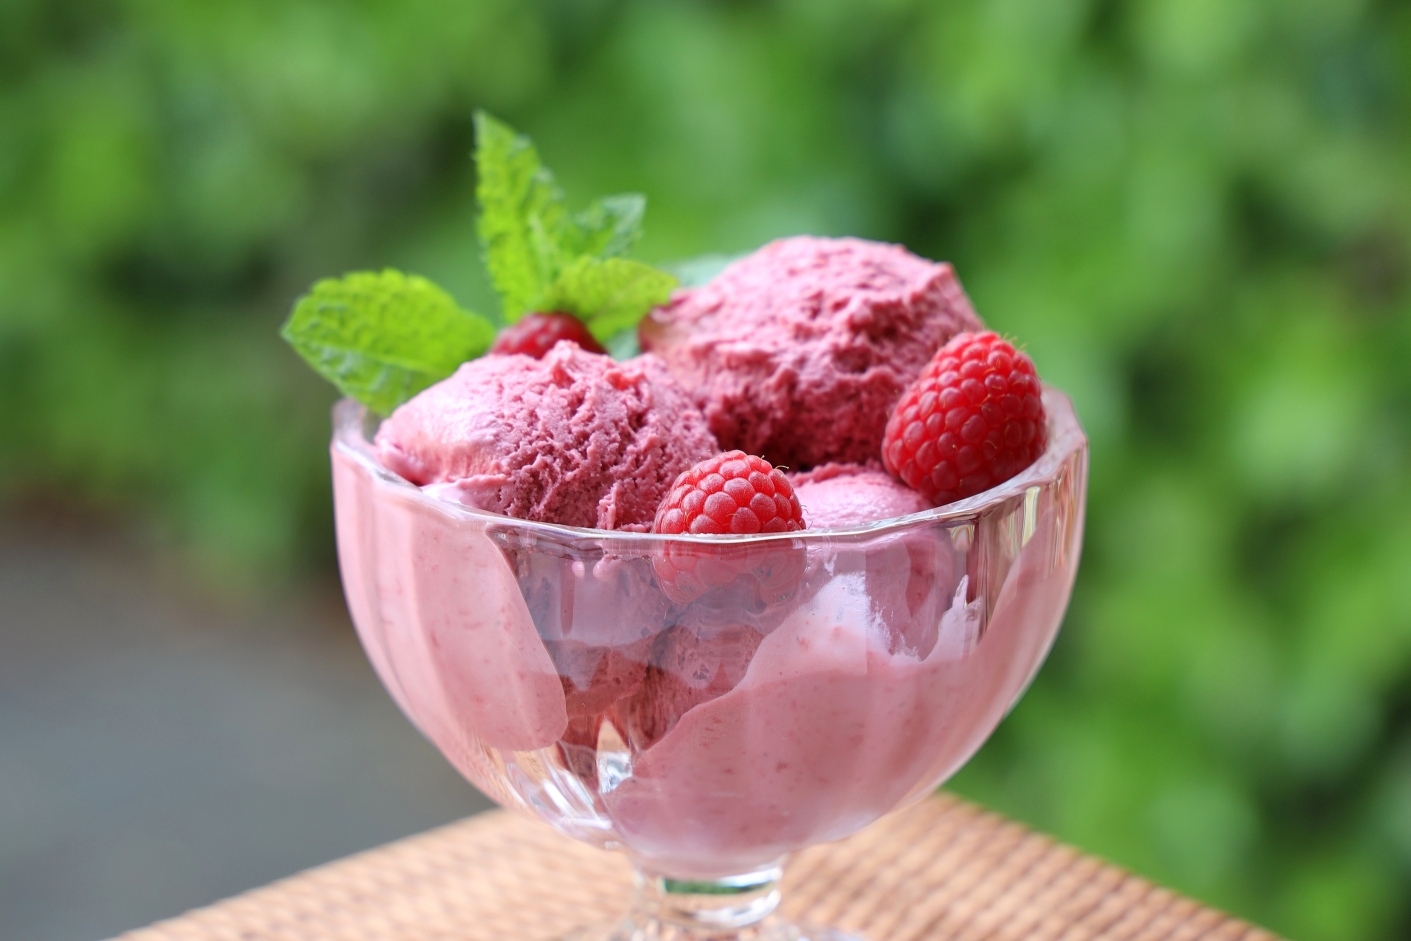 树莓冰淇淋 Himbeereis的做法